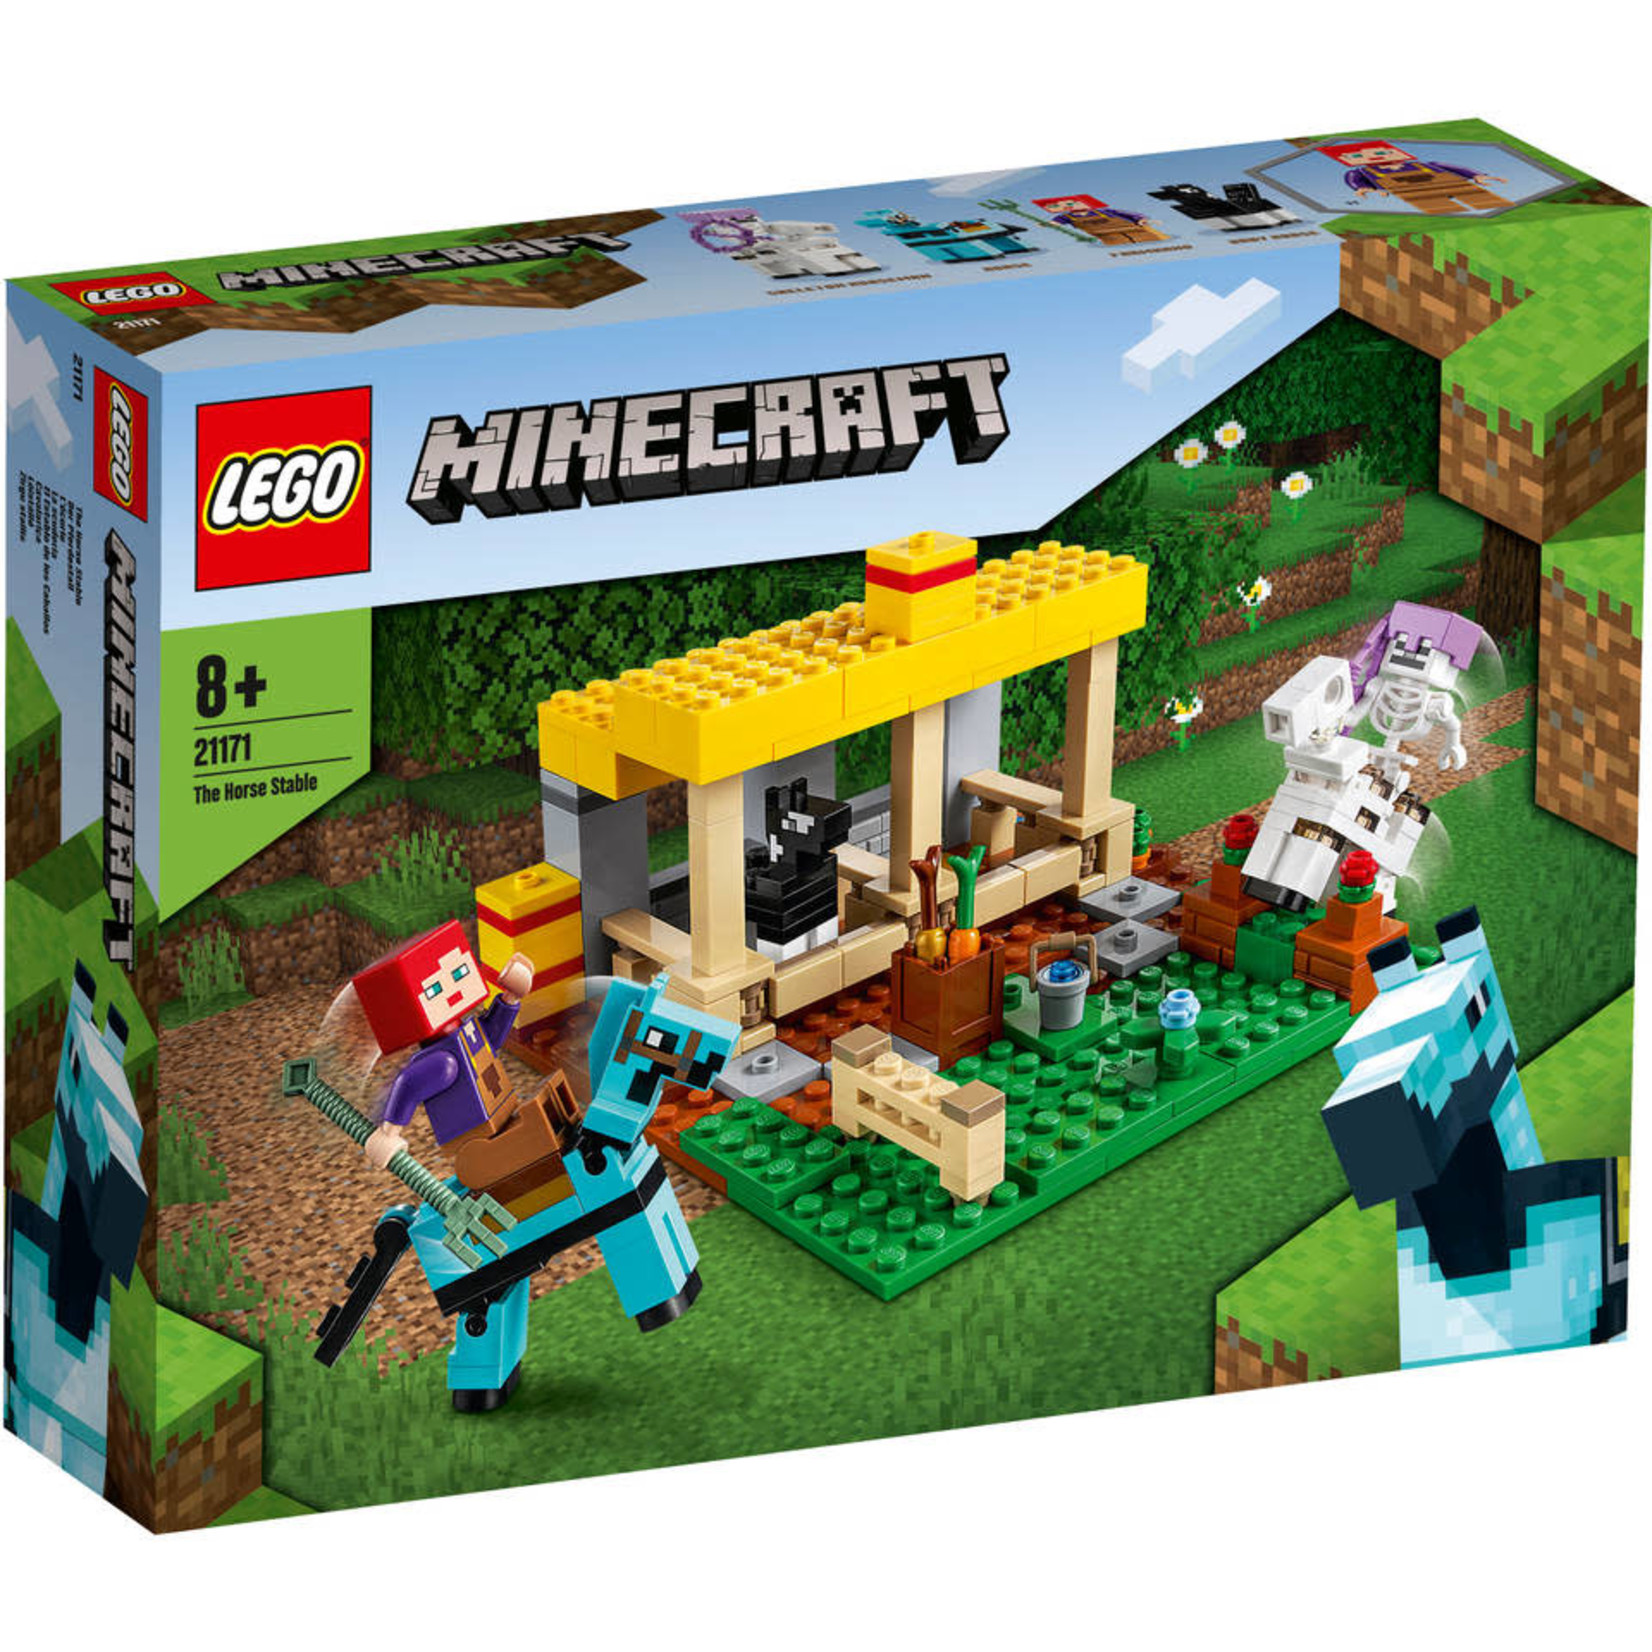 LEGO De Paardenstal - 21171